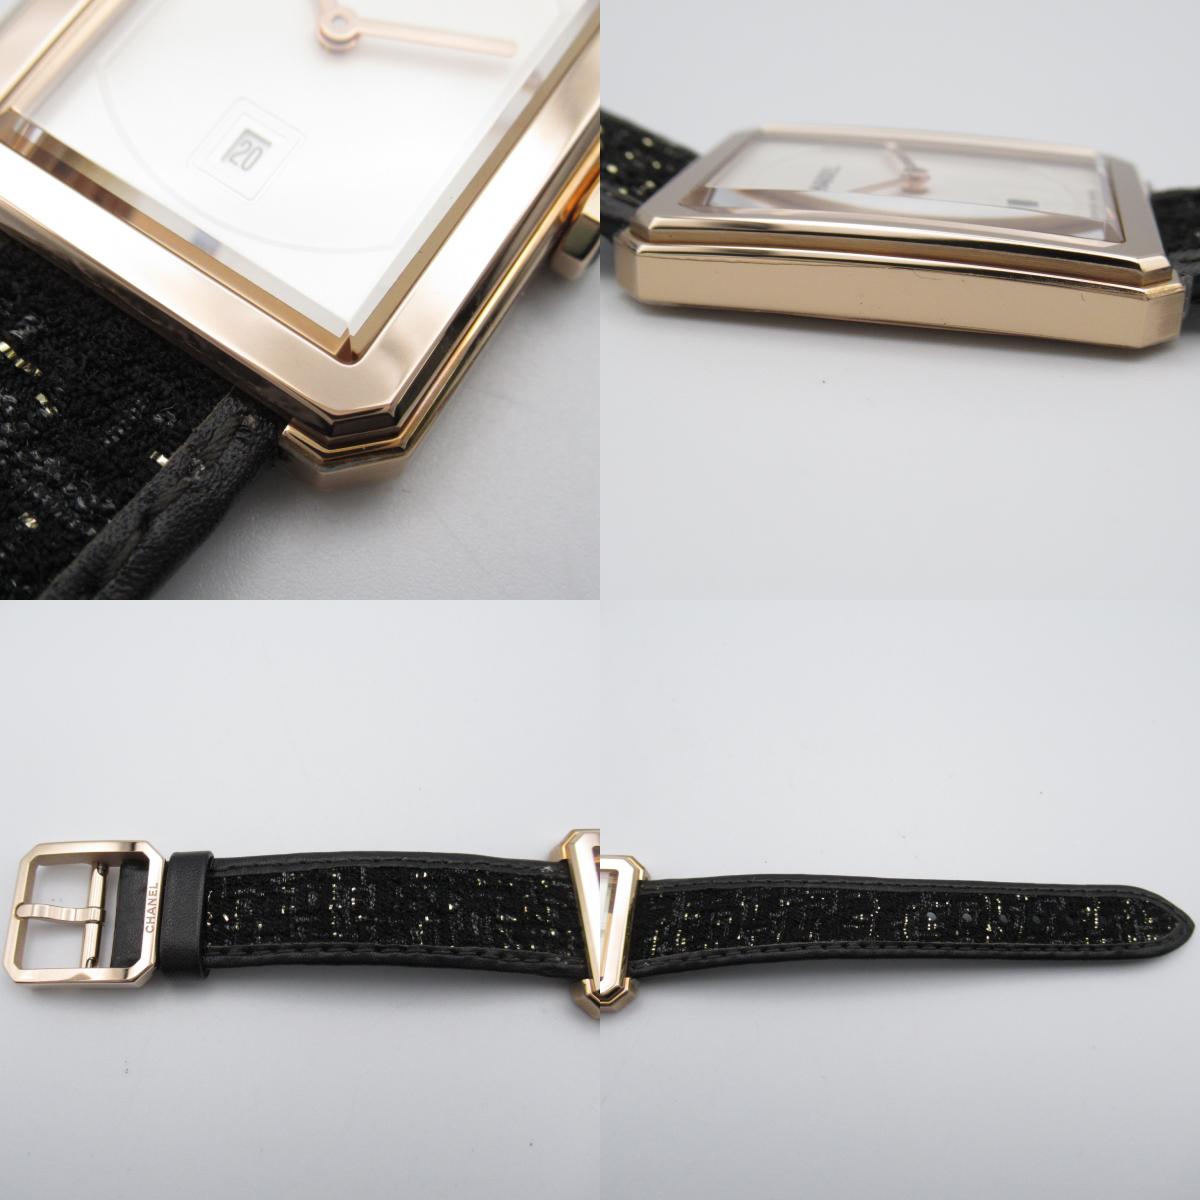 Chanel Girlfriend Tweedey Strap Watch Watch Leather Belt Beige G  White Opal White H5586